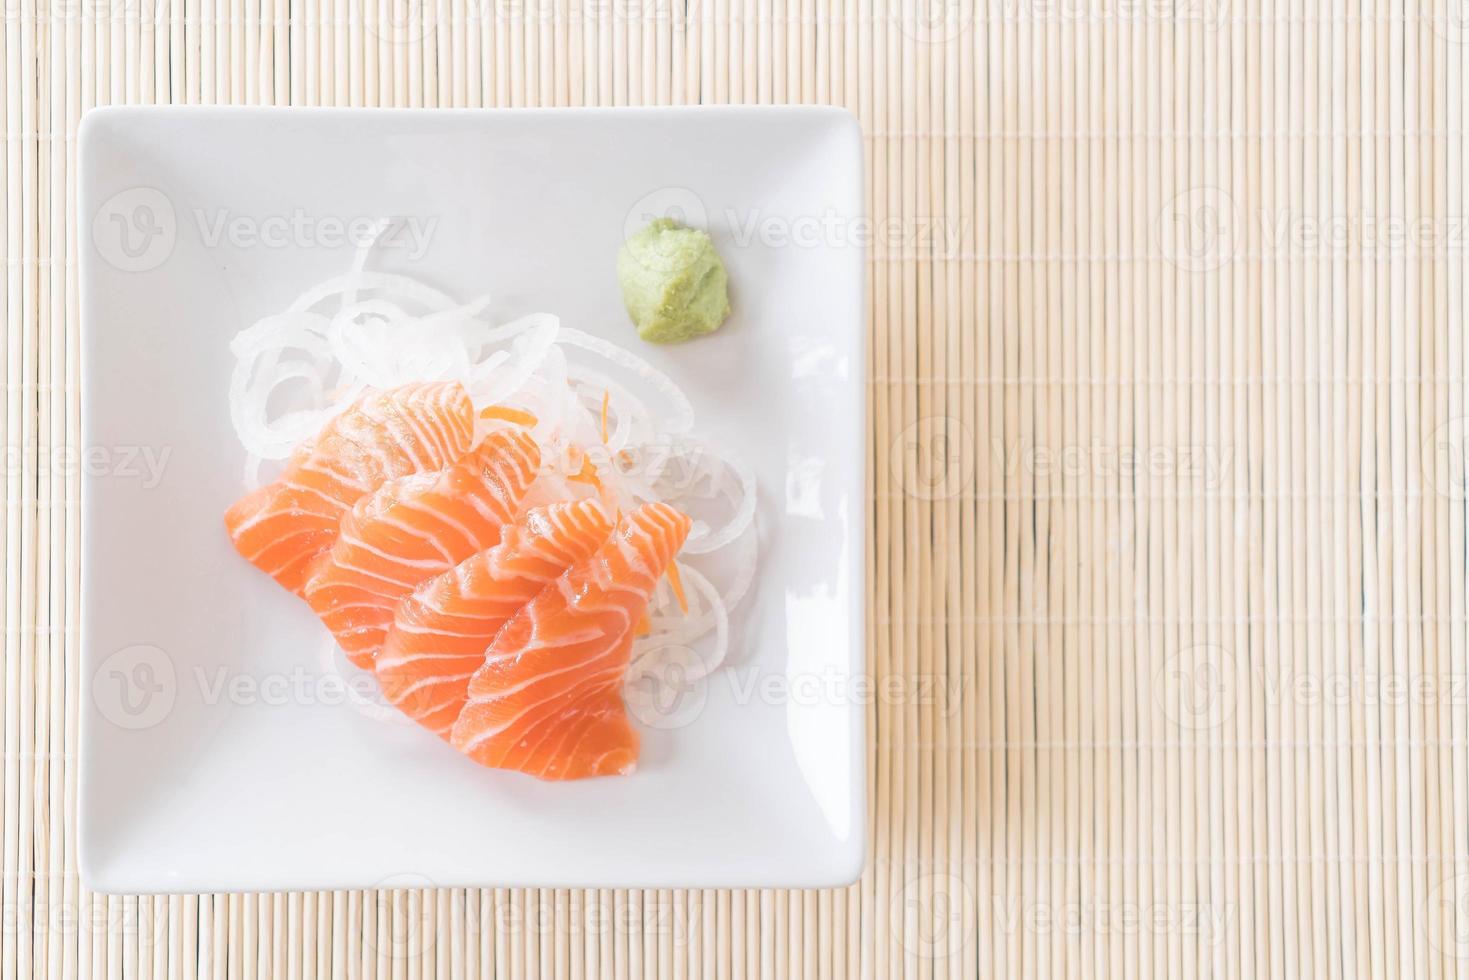 sashimi cru de salmão foto